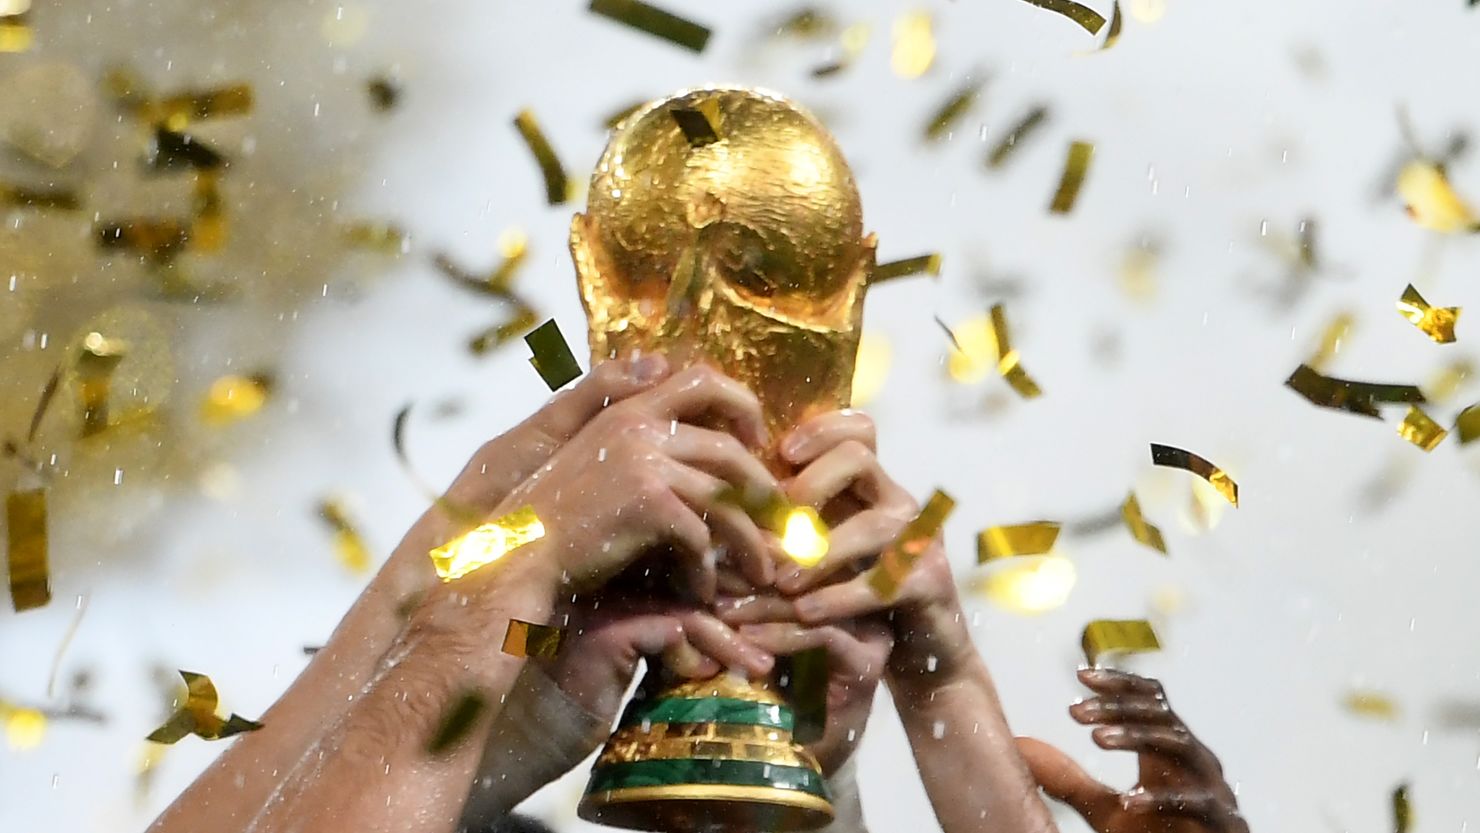 Copa do Mundo 2026: datas, locais e formato